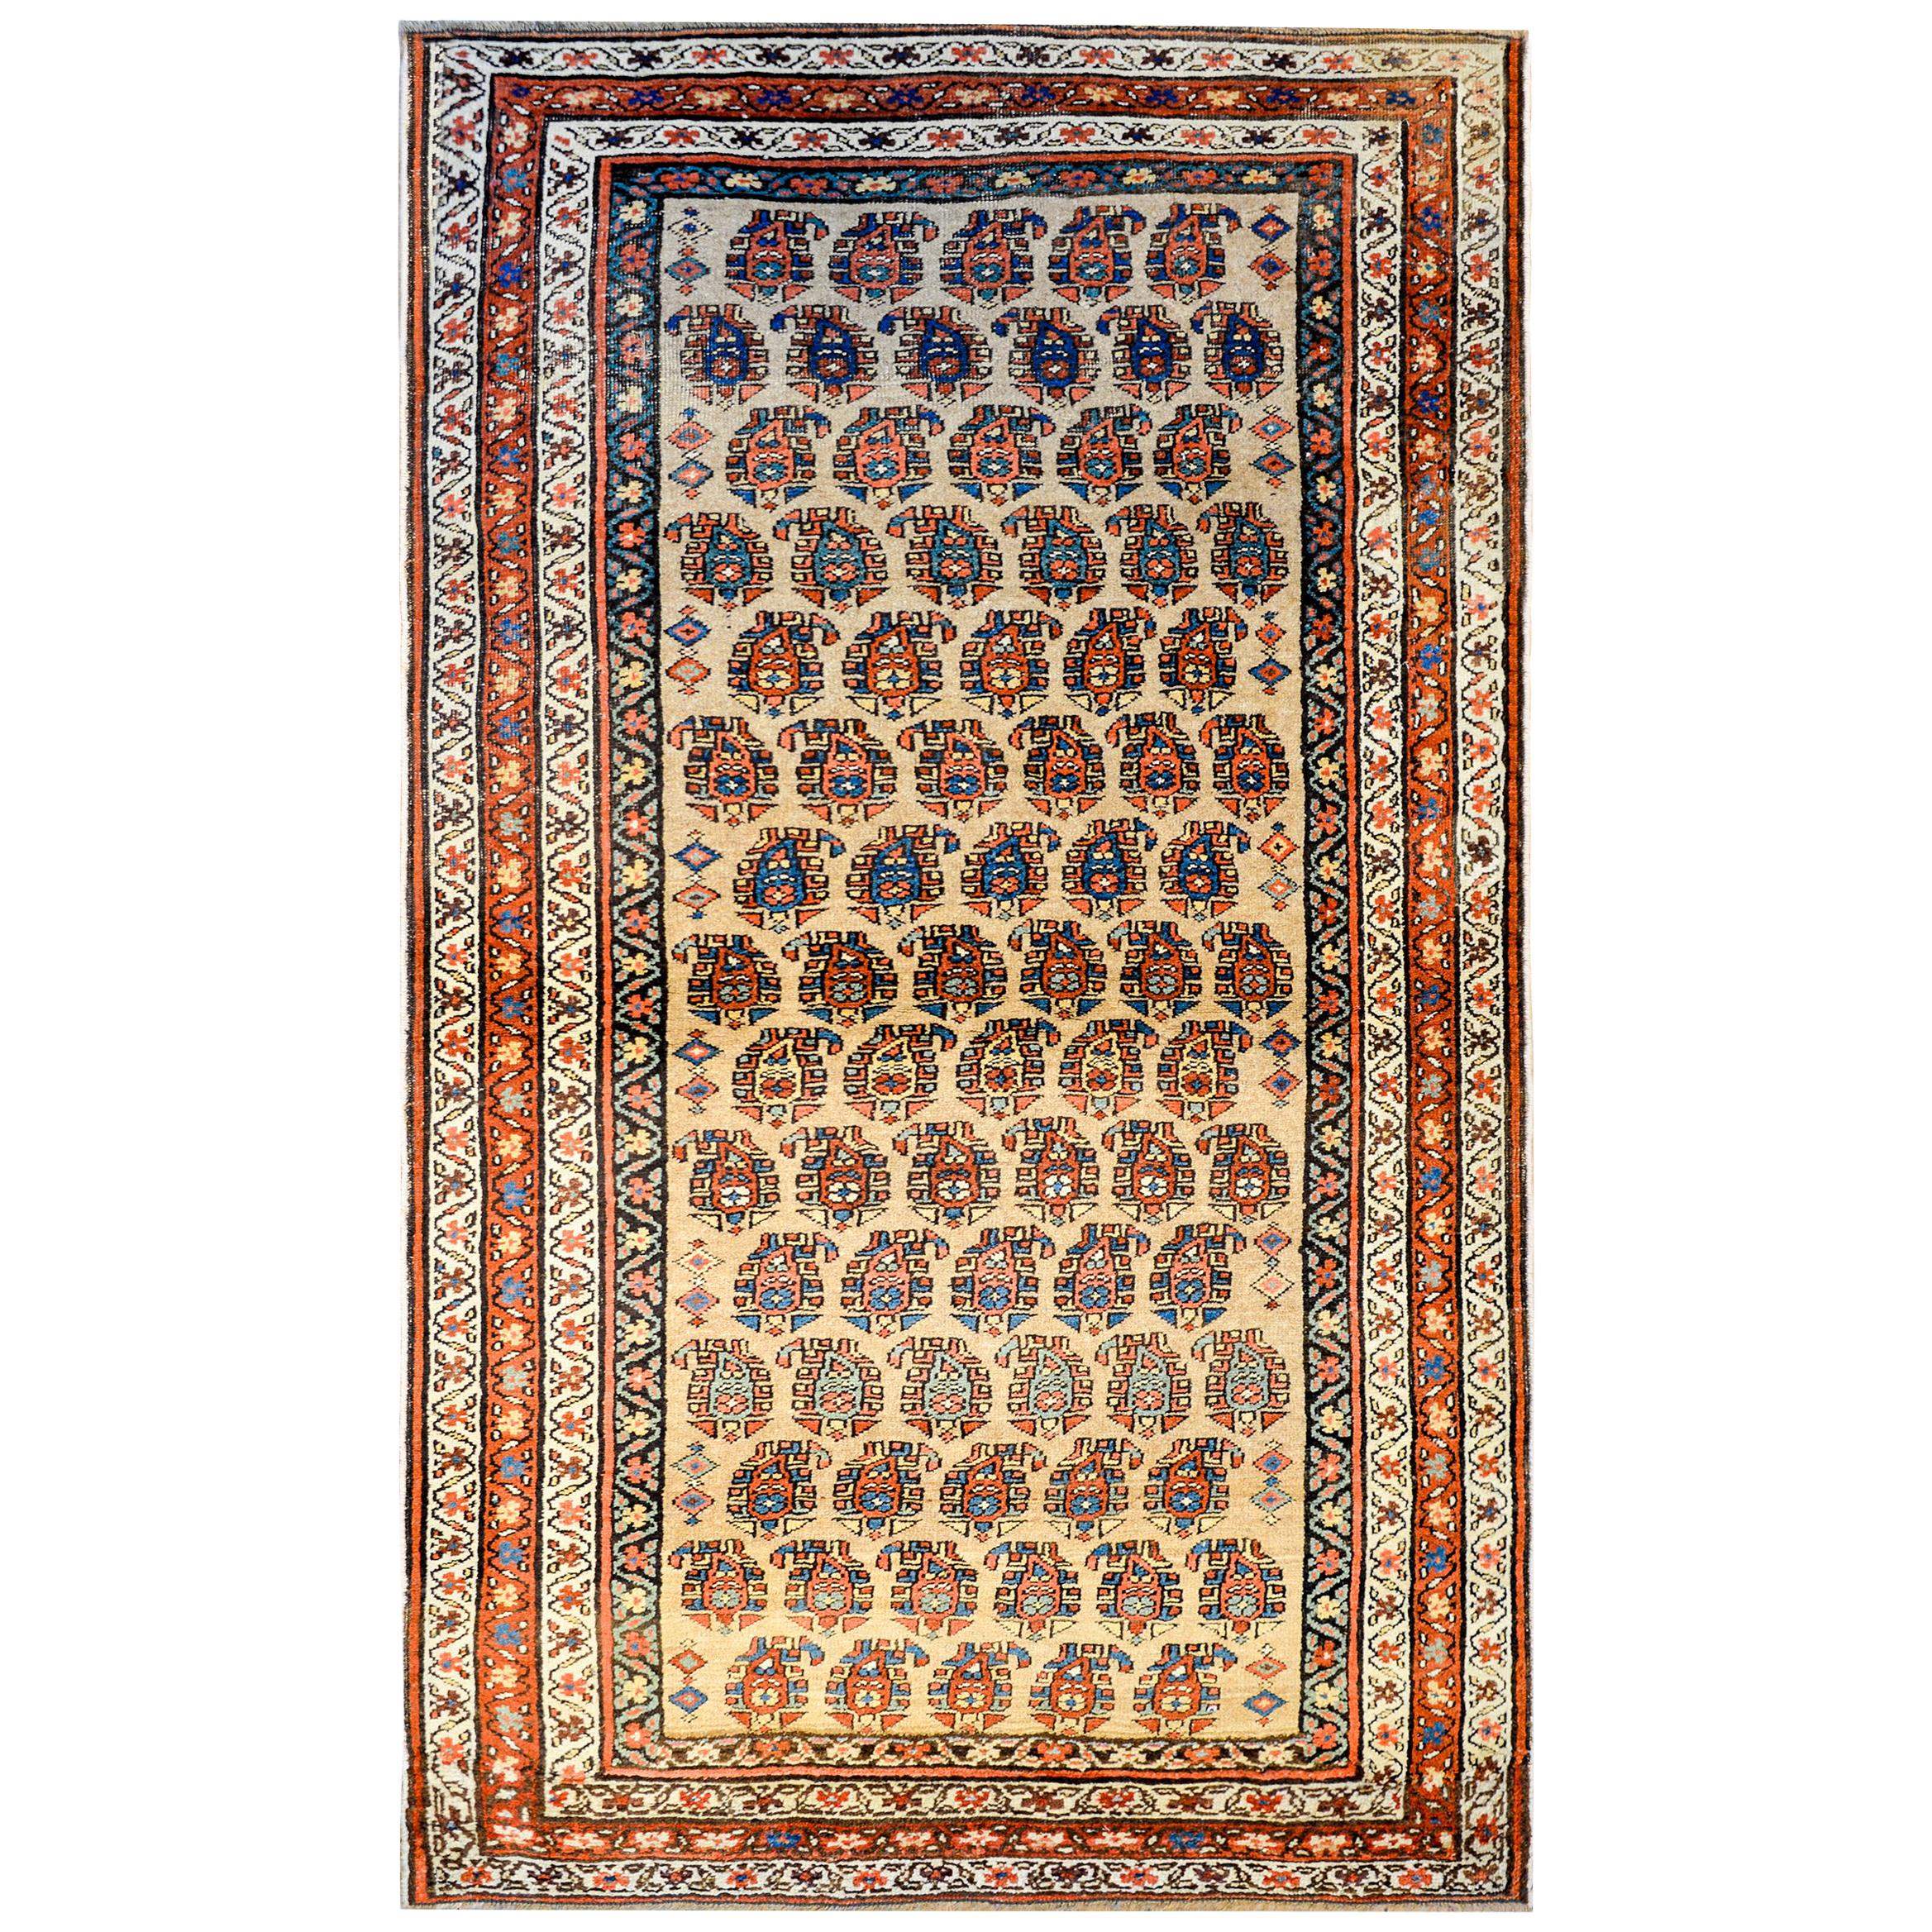 Wunderschöner Bidjar-Teppich aus dem frühen 20. Jahrhundert